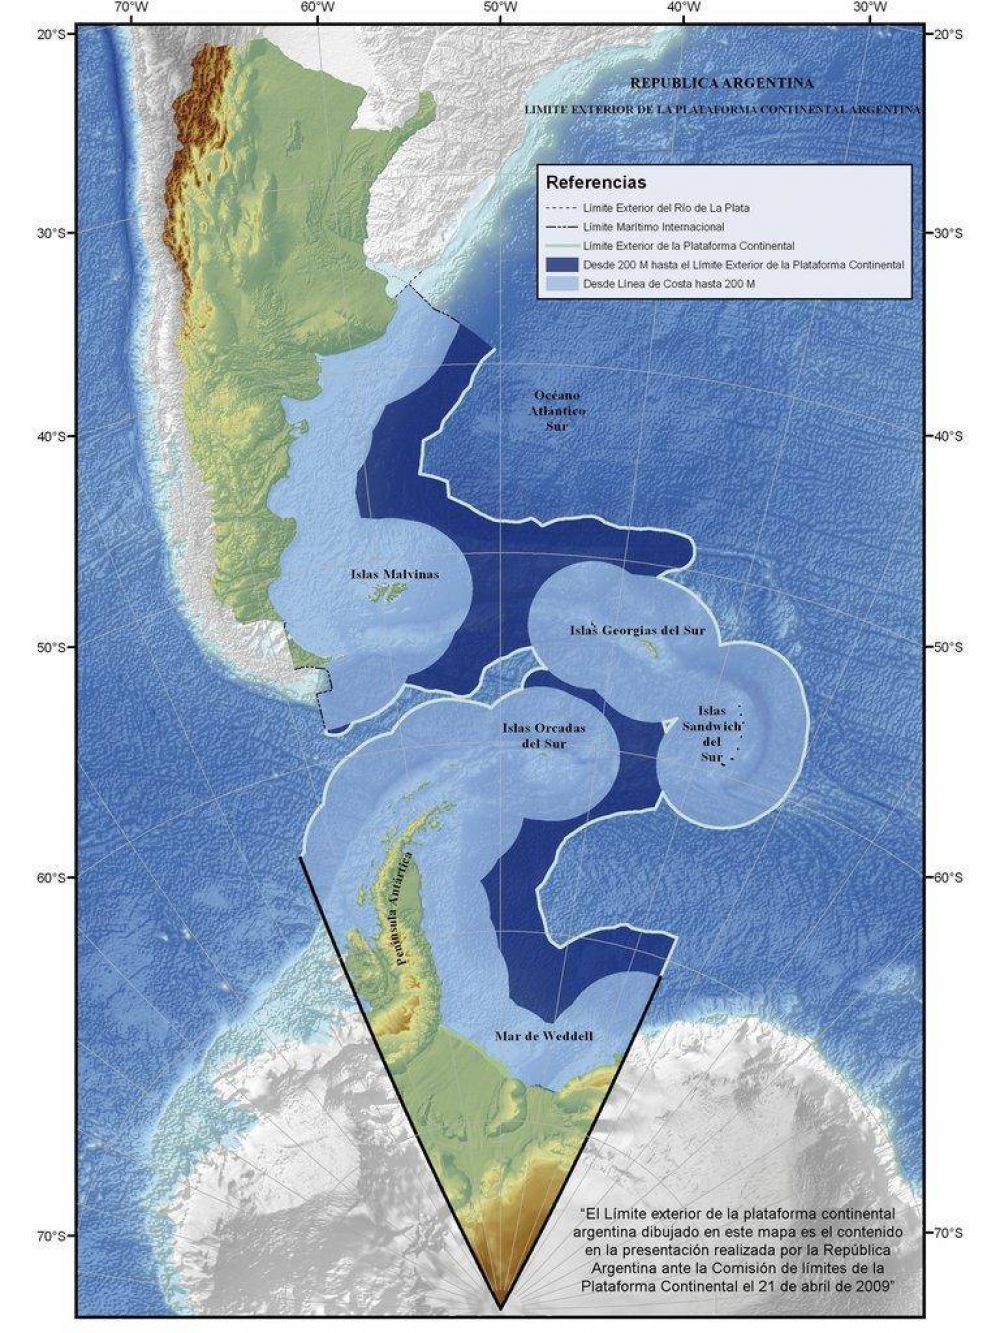 Malvinas: el Gobierno habilitará licitaciones petroleras en la zona de ampliación de la plataforma submarina para fortalecer su reclamo de soberanía